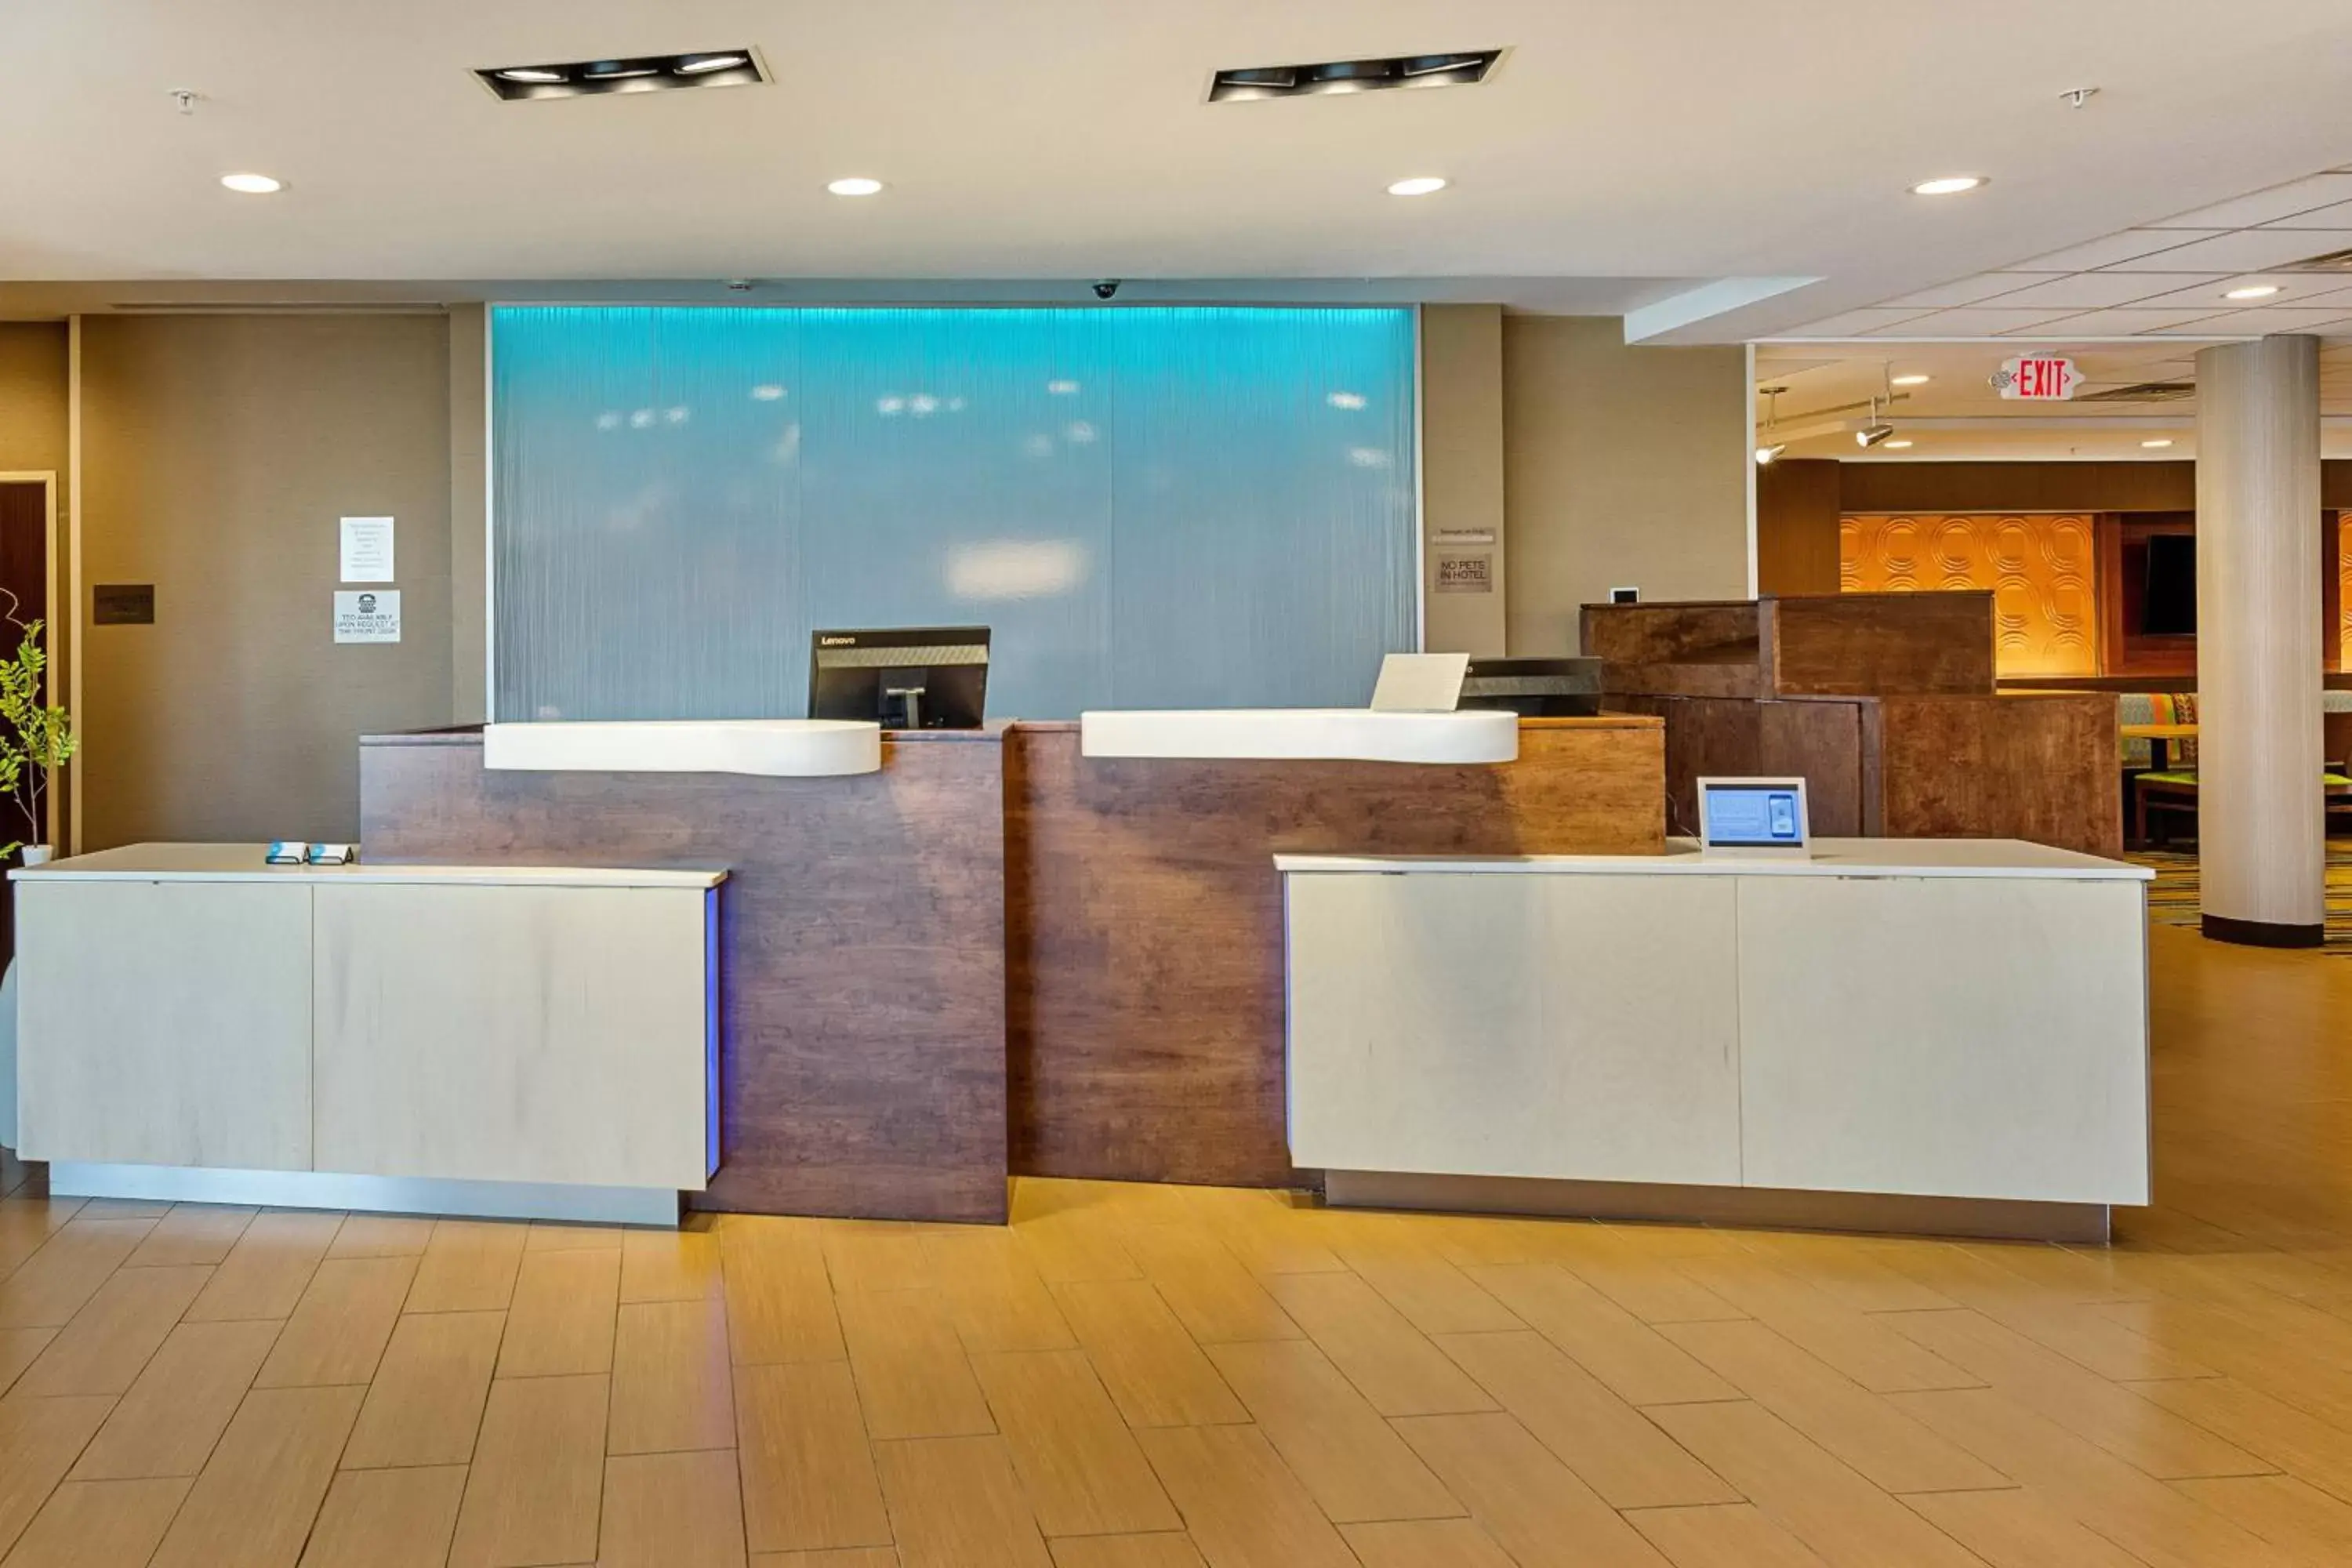 Lobby or reception, Lobby/Reception in Fairfield Inn & Suites by Marriott Abingdon